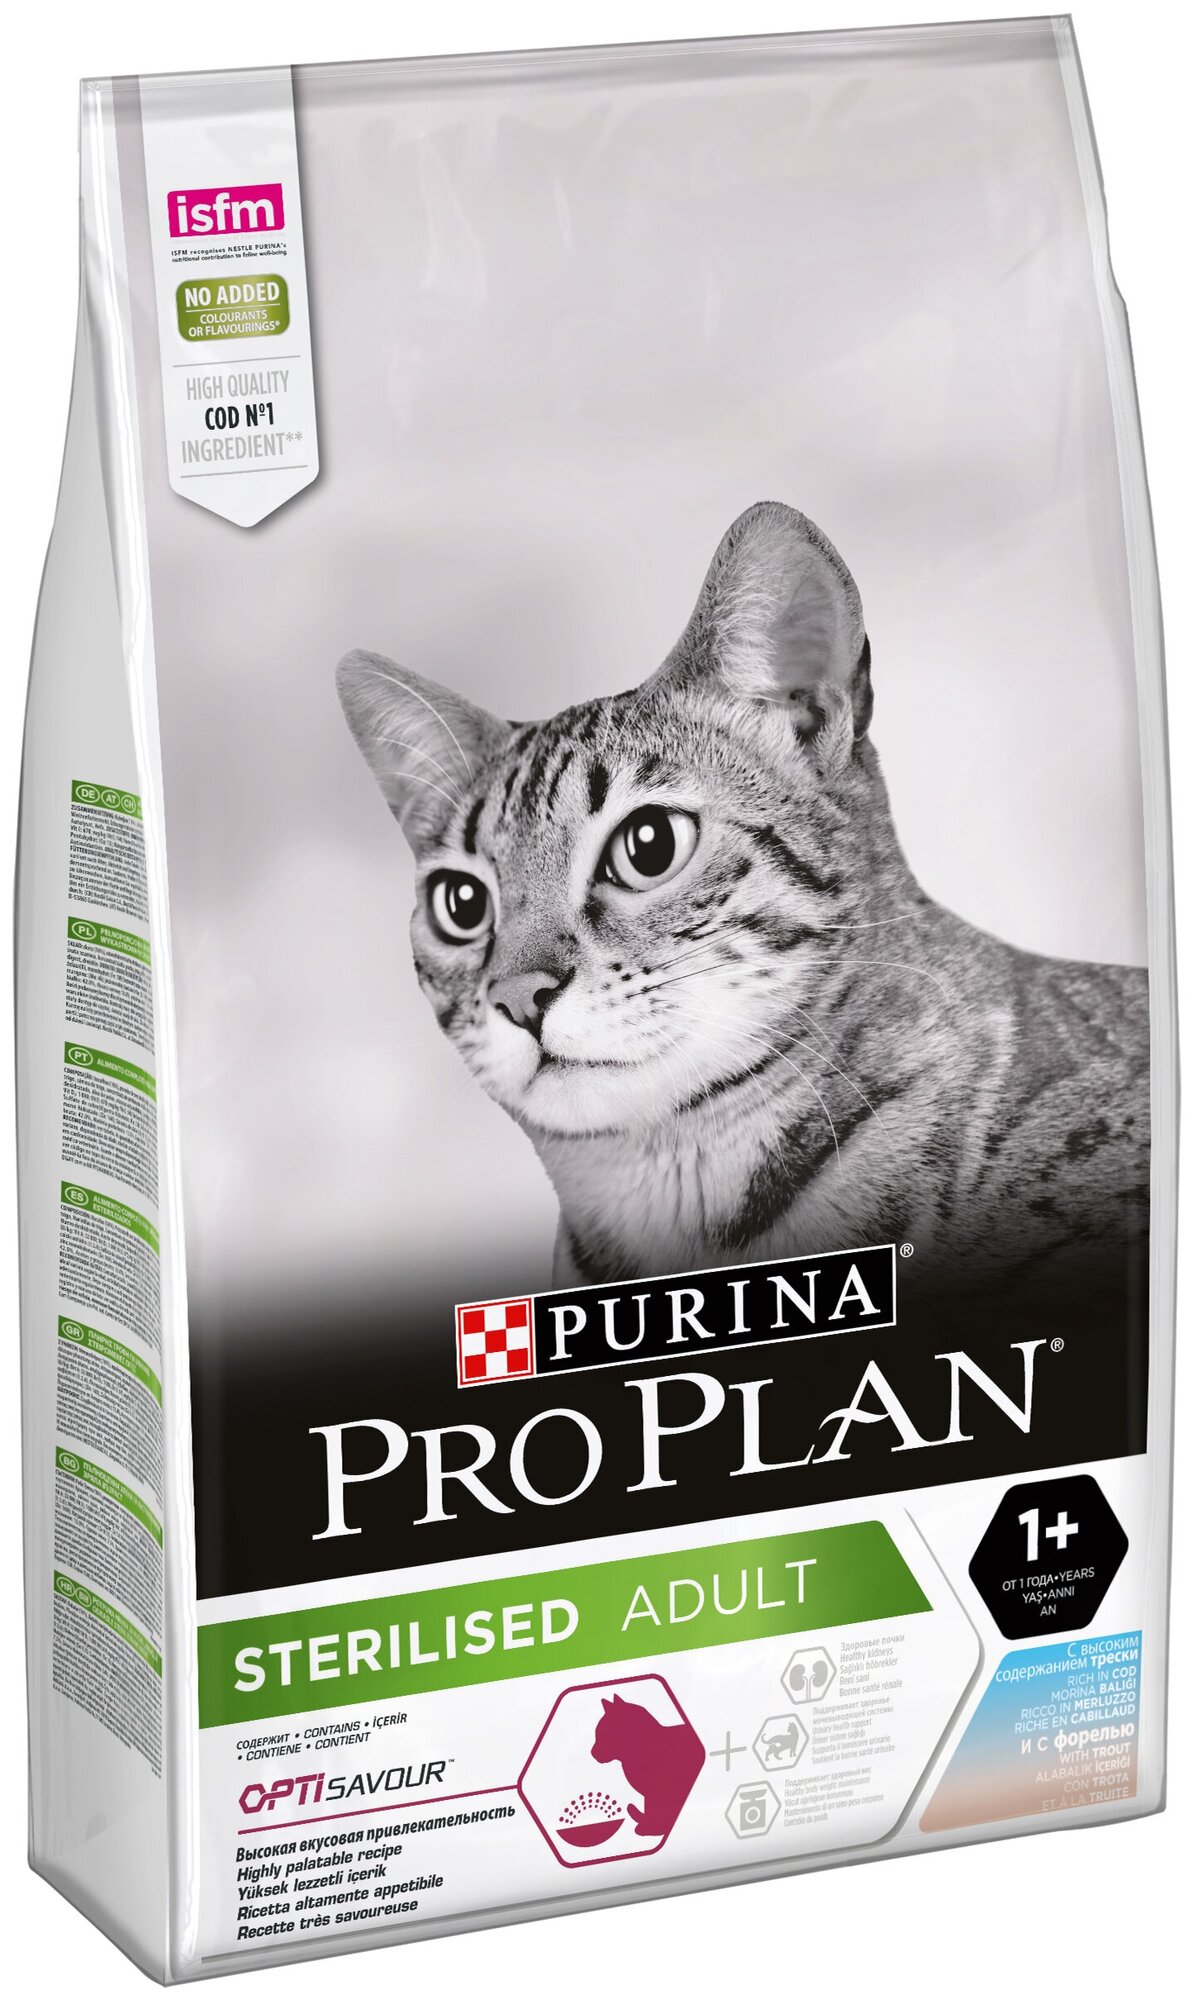 Сухой корм для стерилизованных кошек и кастрированных котов Purina Pro Plan Sterilised ADULT OPTISAVOUR, с треской и c форелью, 2 шт. х 1.5 кг